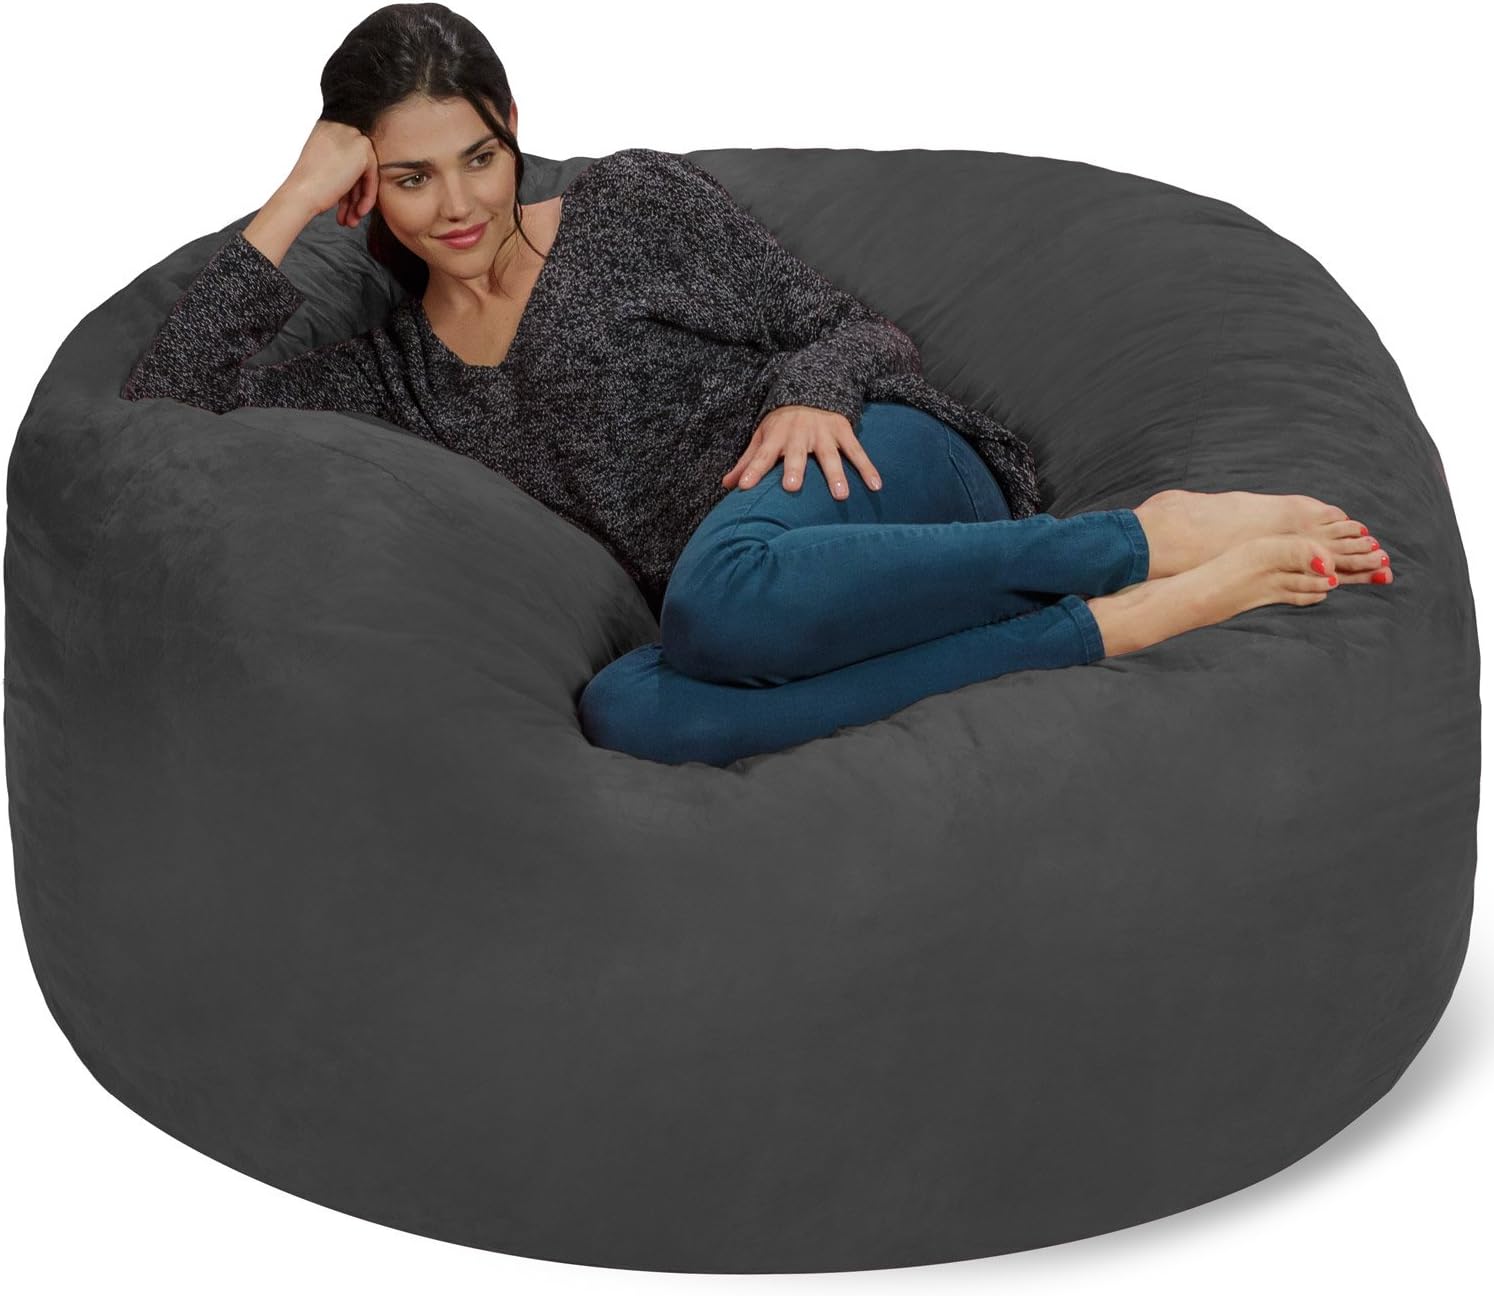 Chill Sack Bean Bag Chair: Giant 5 Memory Foam Furniture Bean Bag